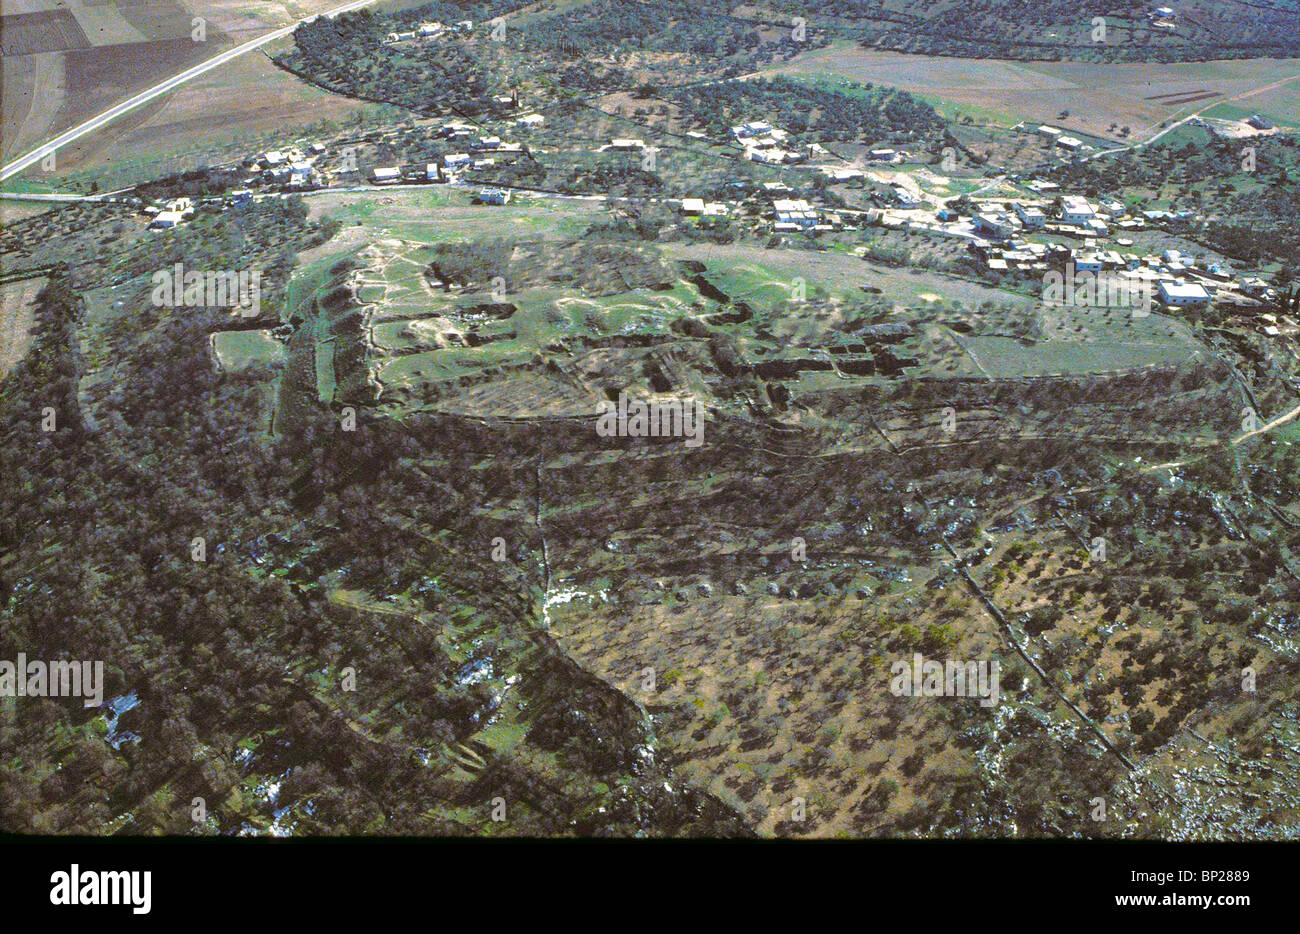 1939. Á TAANACH - CNAANITE ciudad al sur del valle de Jezreel. Conquistada por los Israelitas - Josh 12:21 Foto de stock